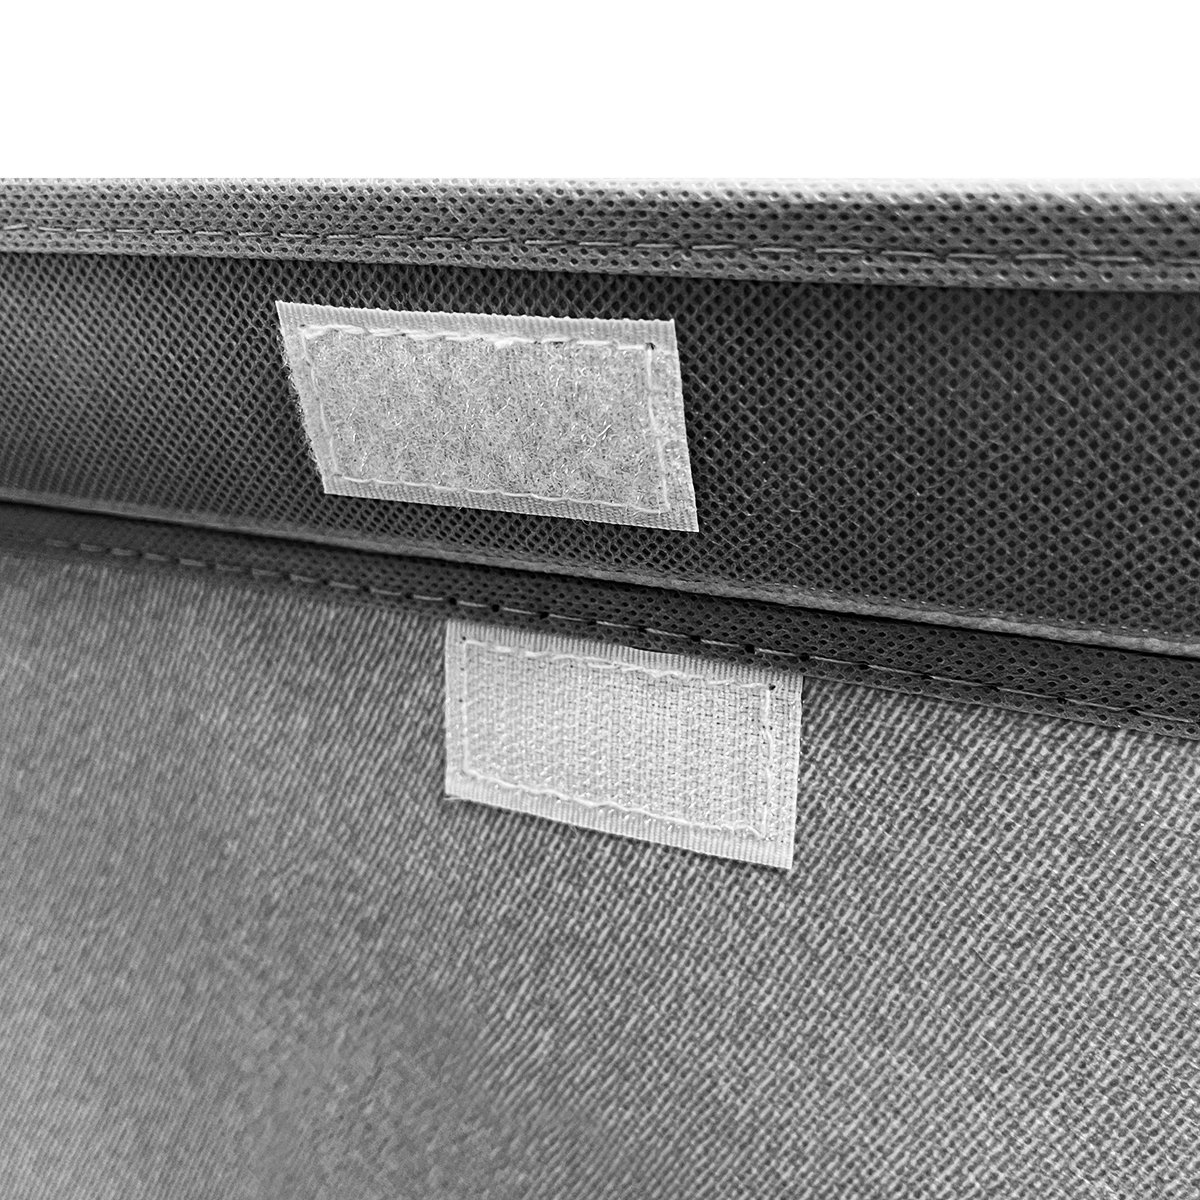 Ящик для зберігання з кришкою МВМ My Home L текстильний, 440х290х280 мм, сірий (TH-07 L GRAY) - фото 2